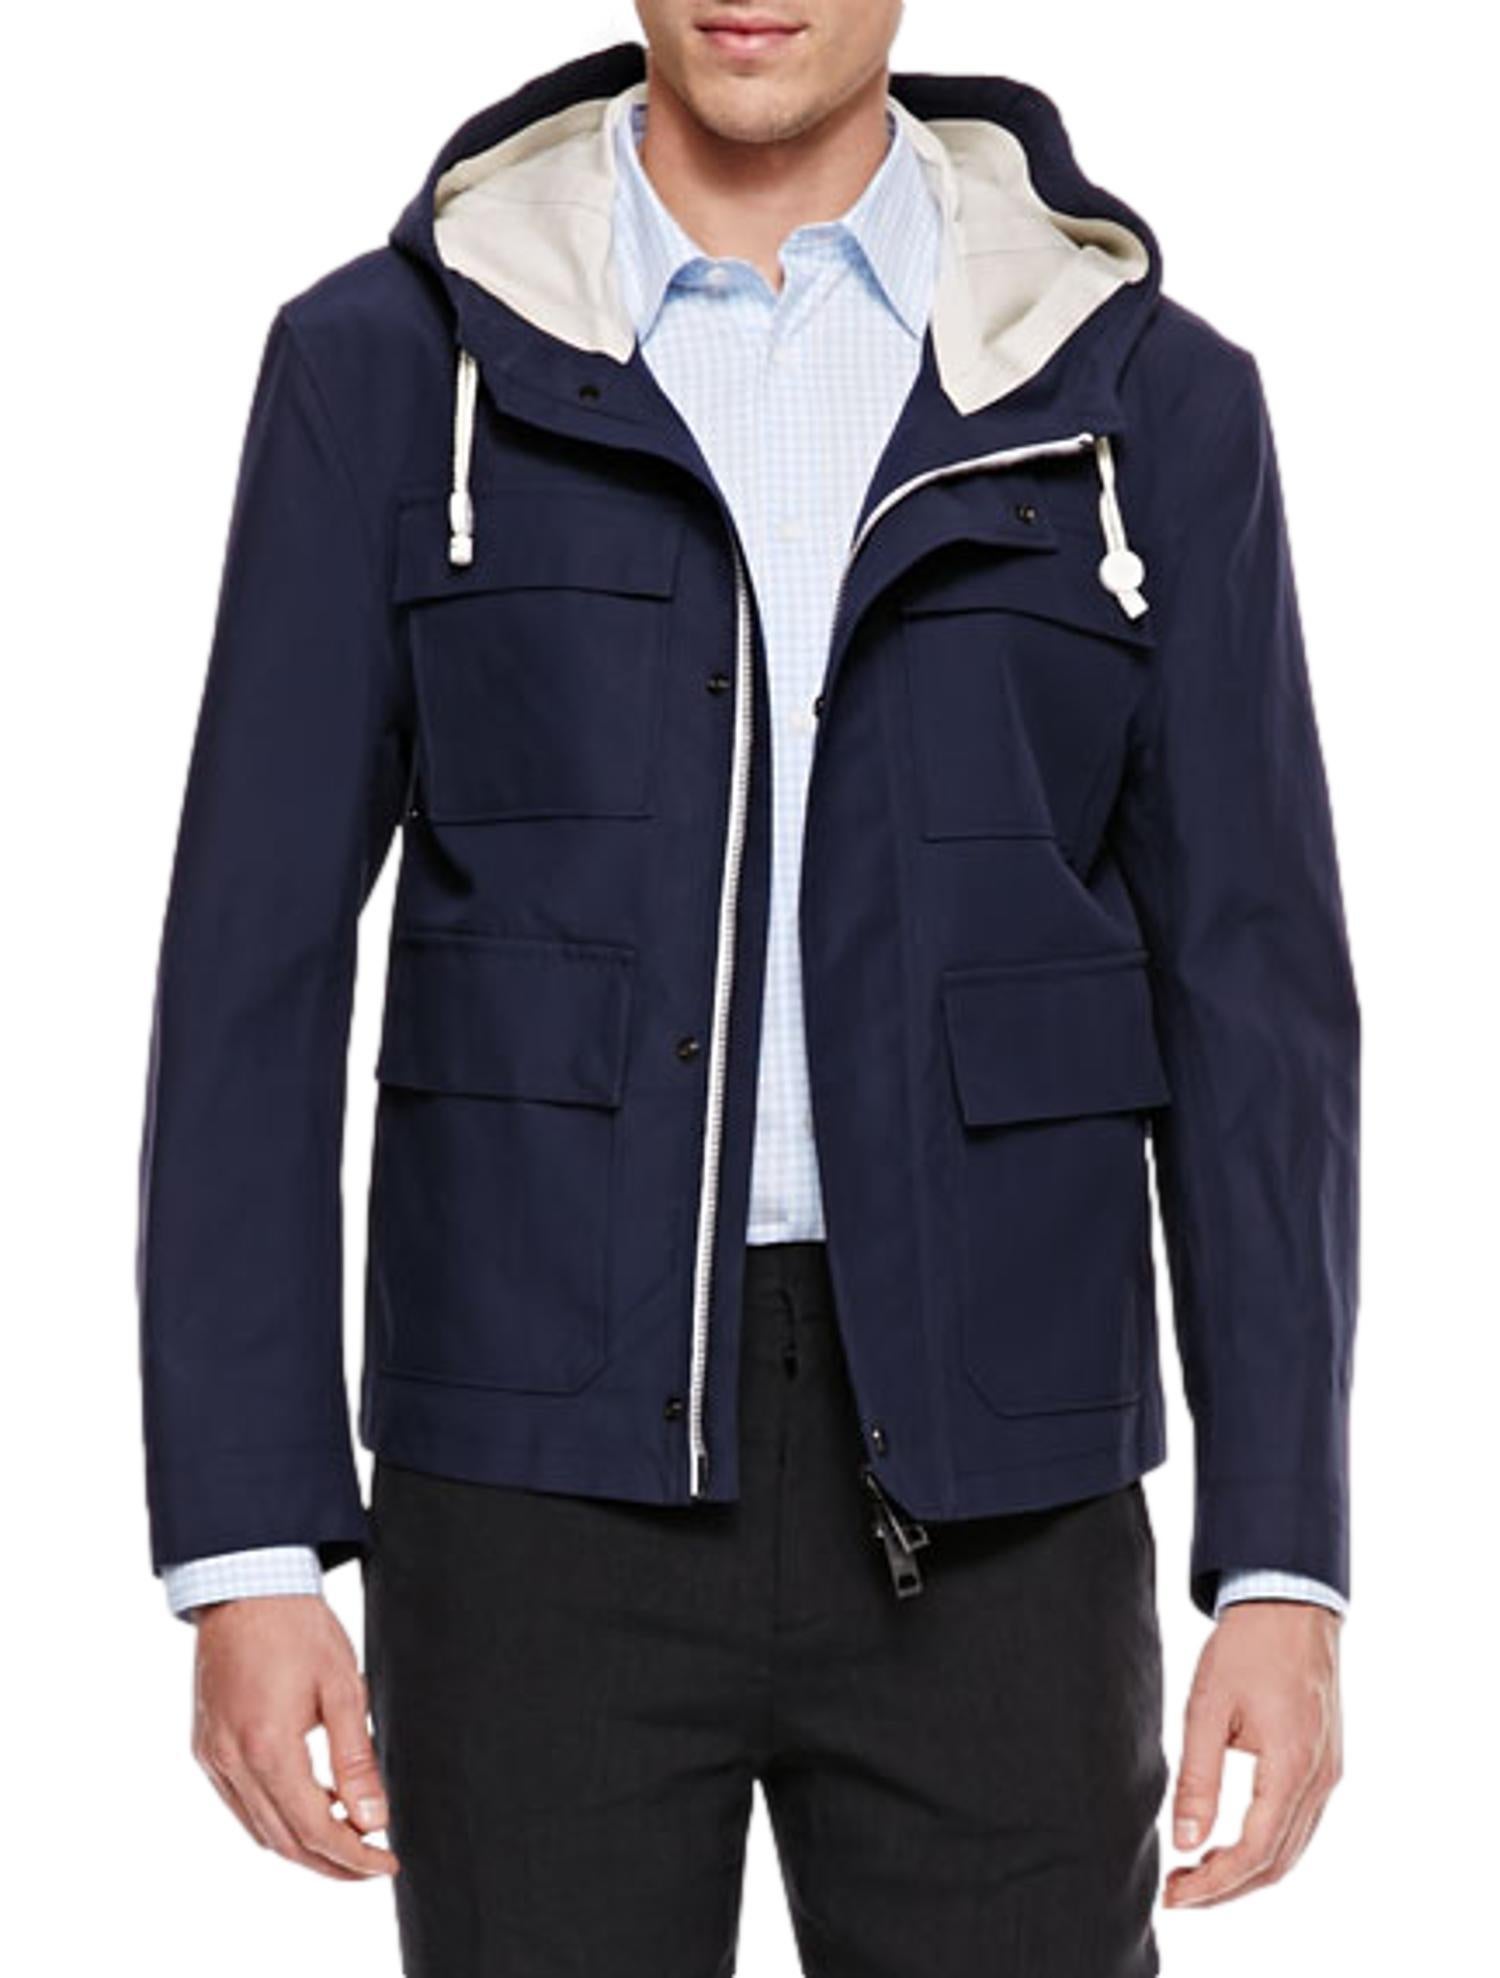 Burberry Prorsum Spring 2014 Navy Blue Sealed-Seam Hooded Cotton Jacket by Christopher Bailey. La veste en coton est résistante aux intempéries grâce à des coutures d'étanchéité. Capuche à cordon de serrage avec doublure contrastée ornée d'un logo ;